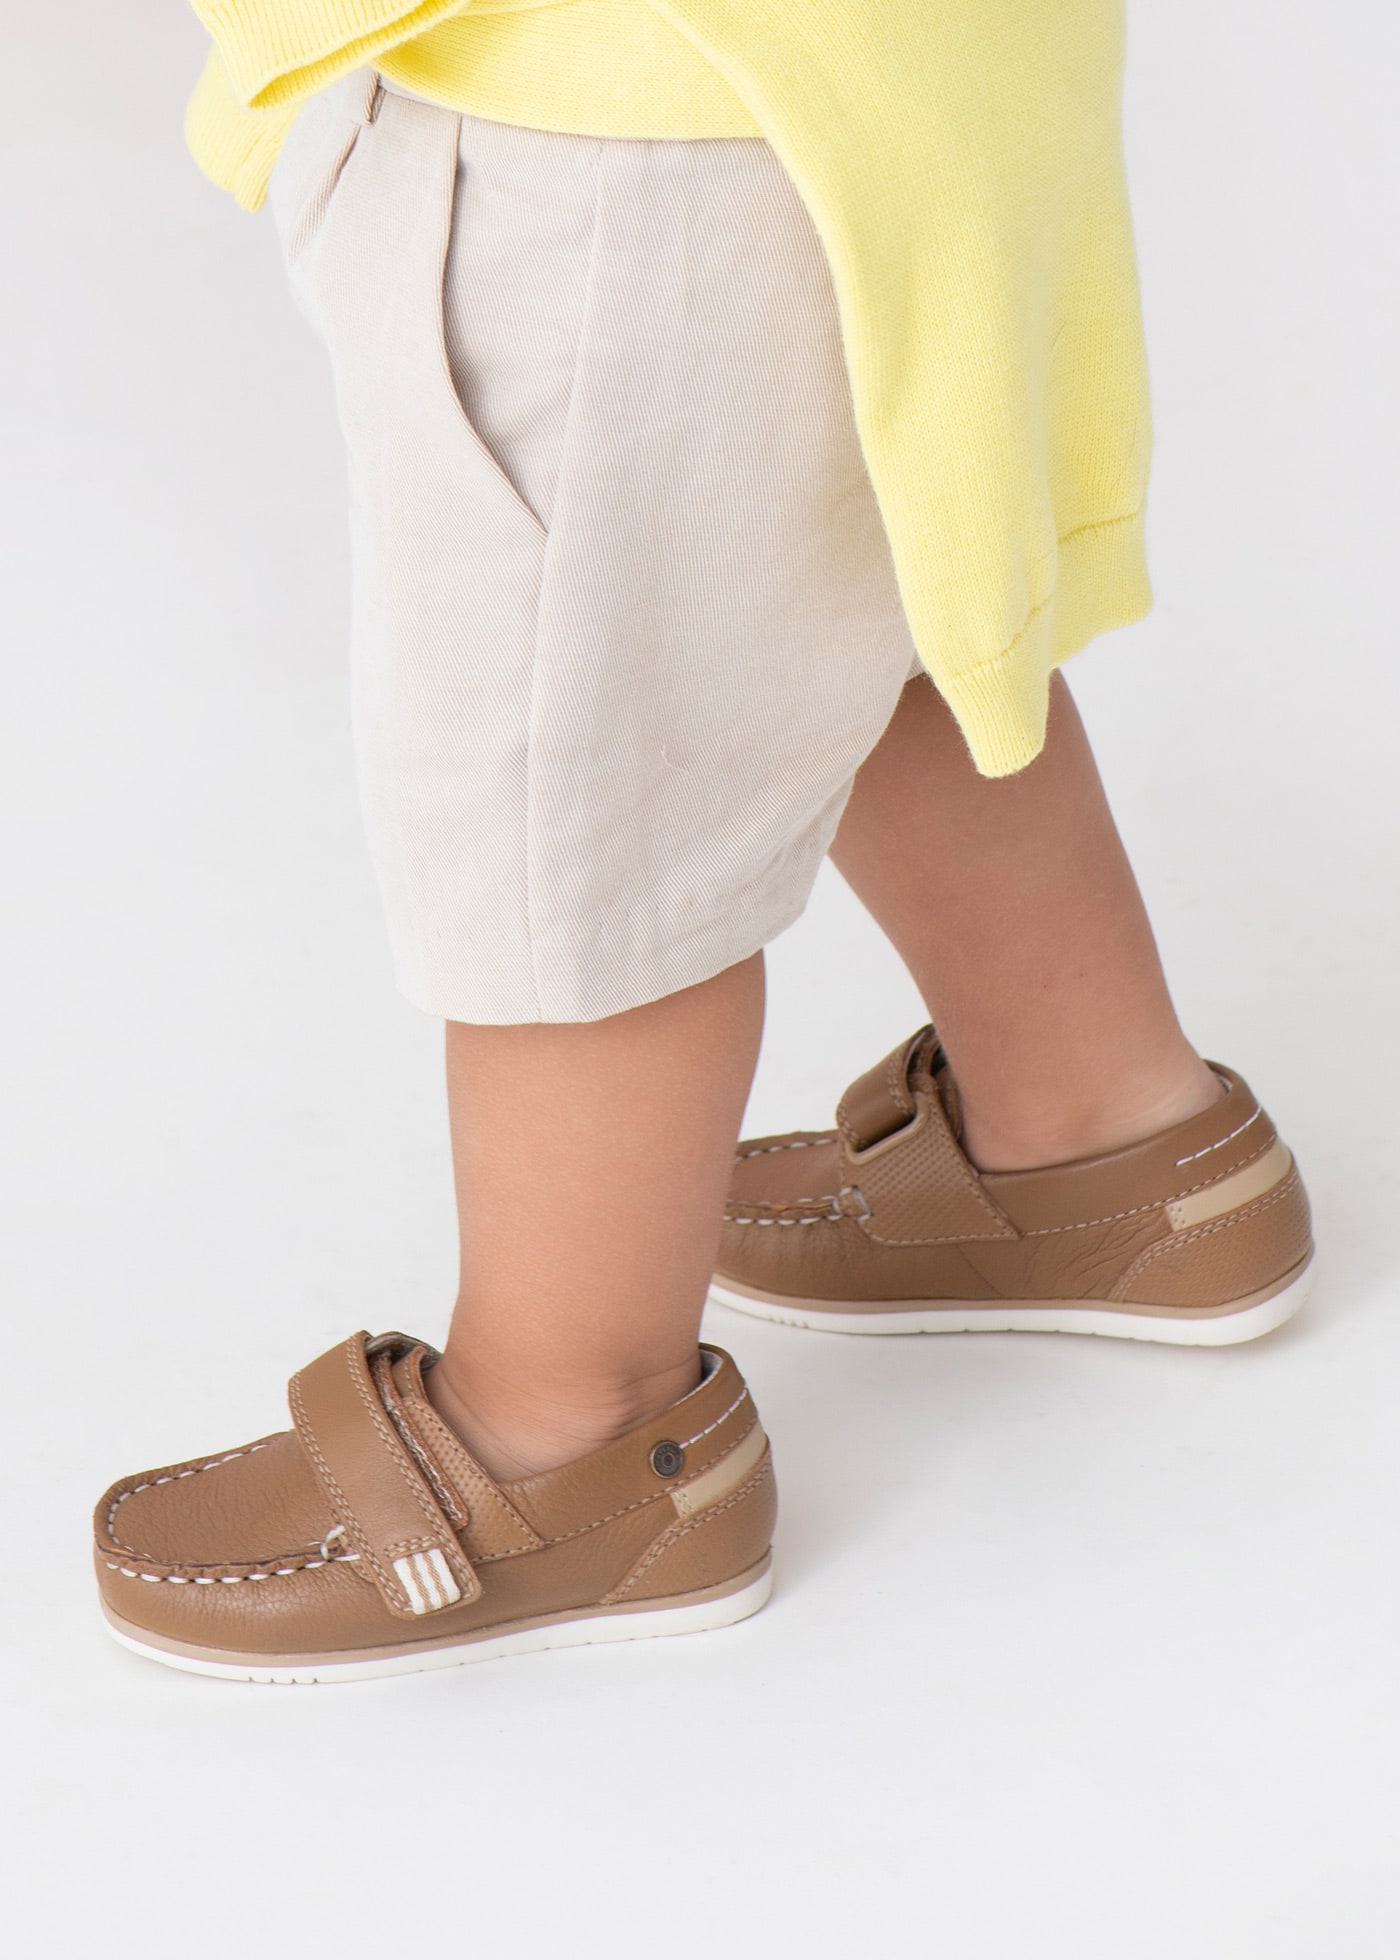 Buty marynarskie skórzane zapinane na rzep dla niemowlęcia